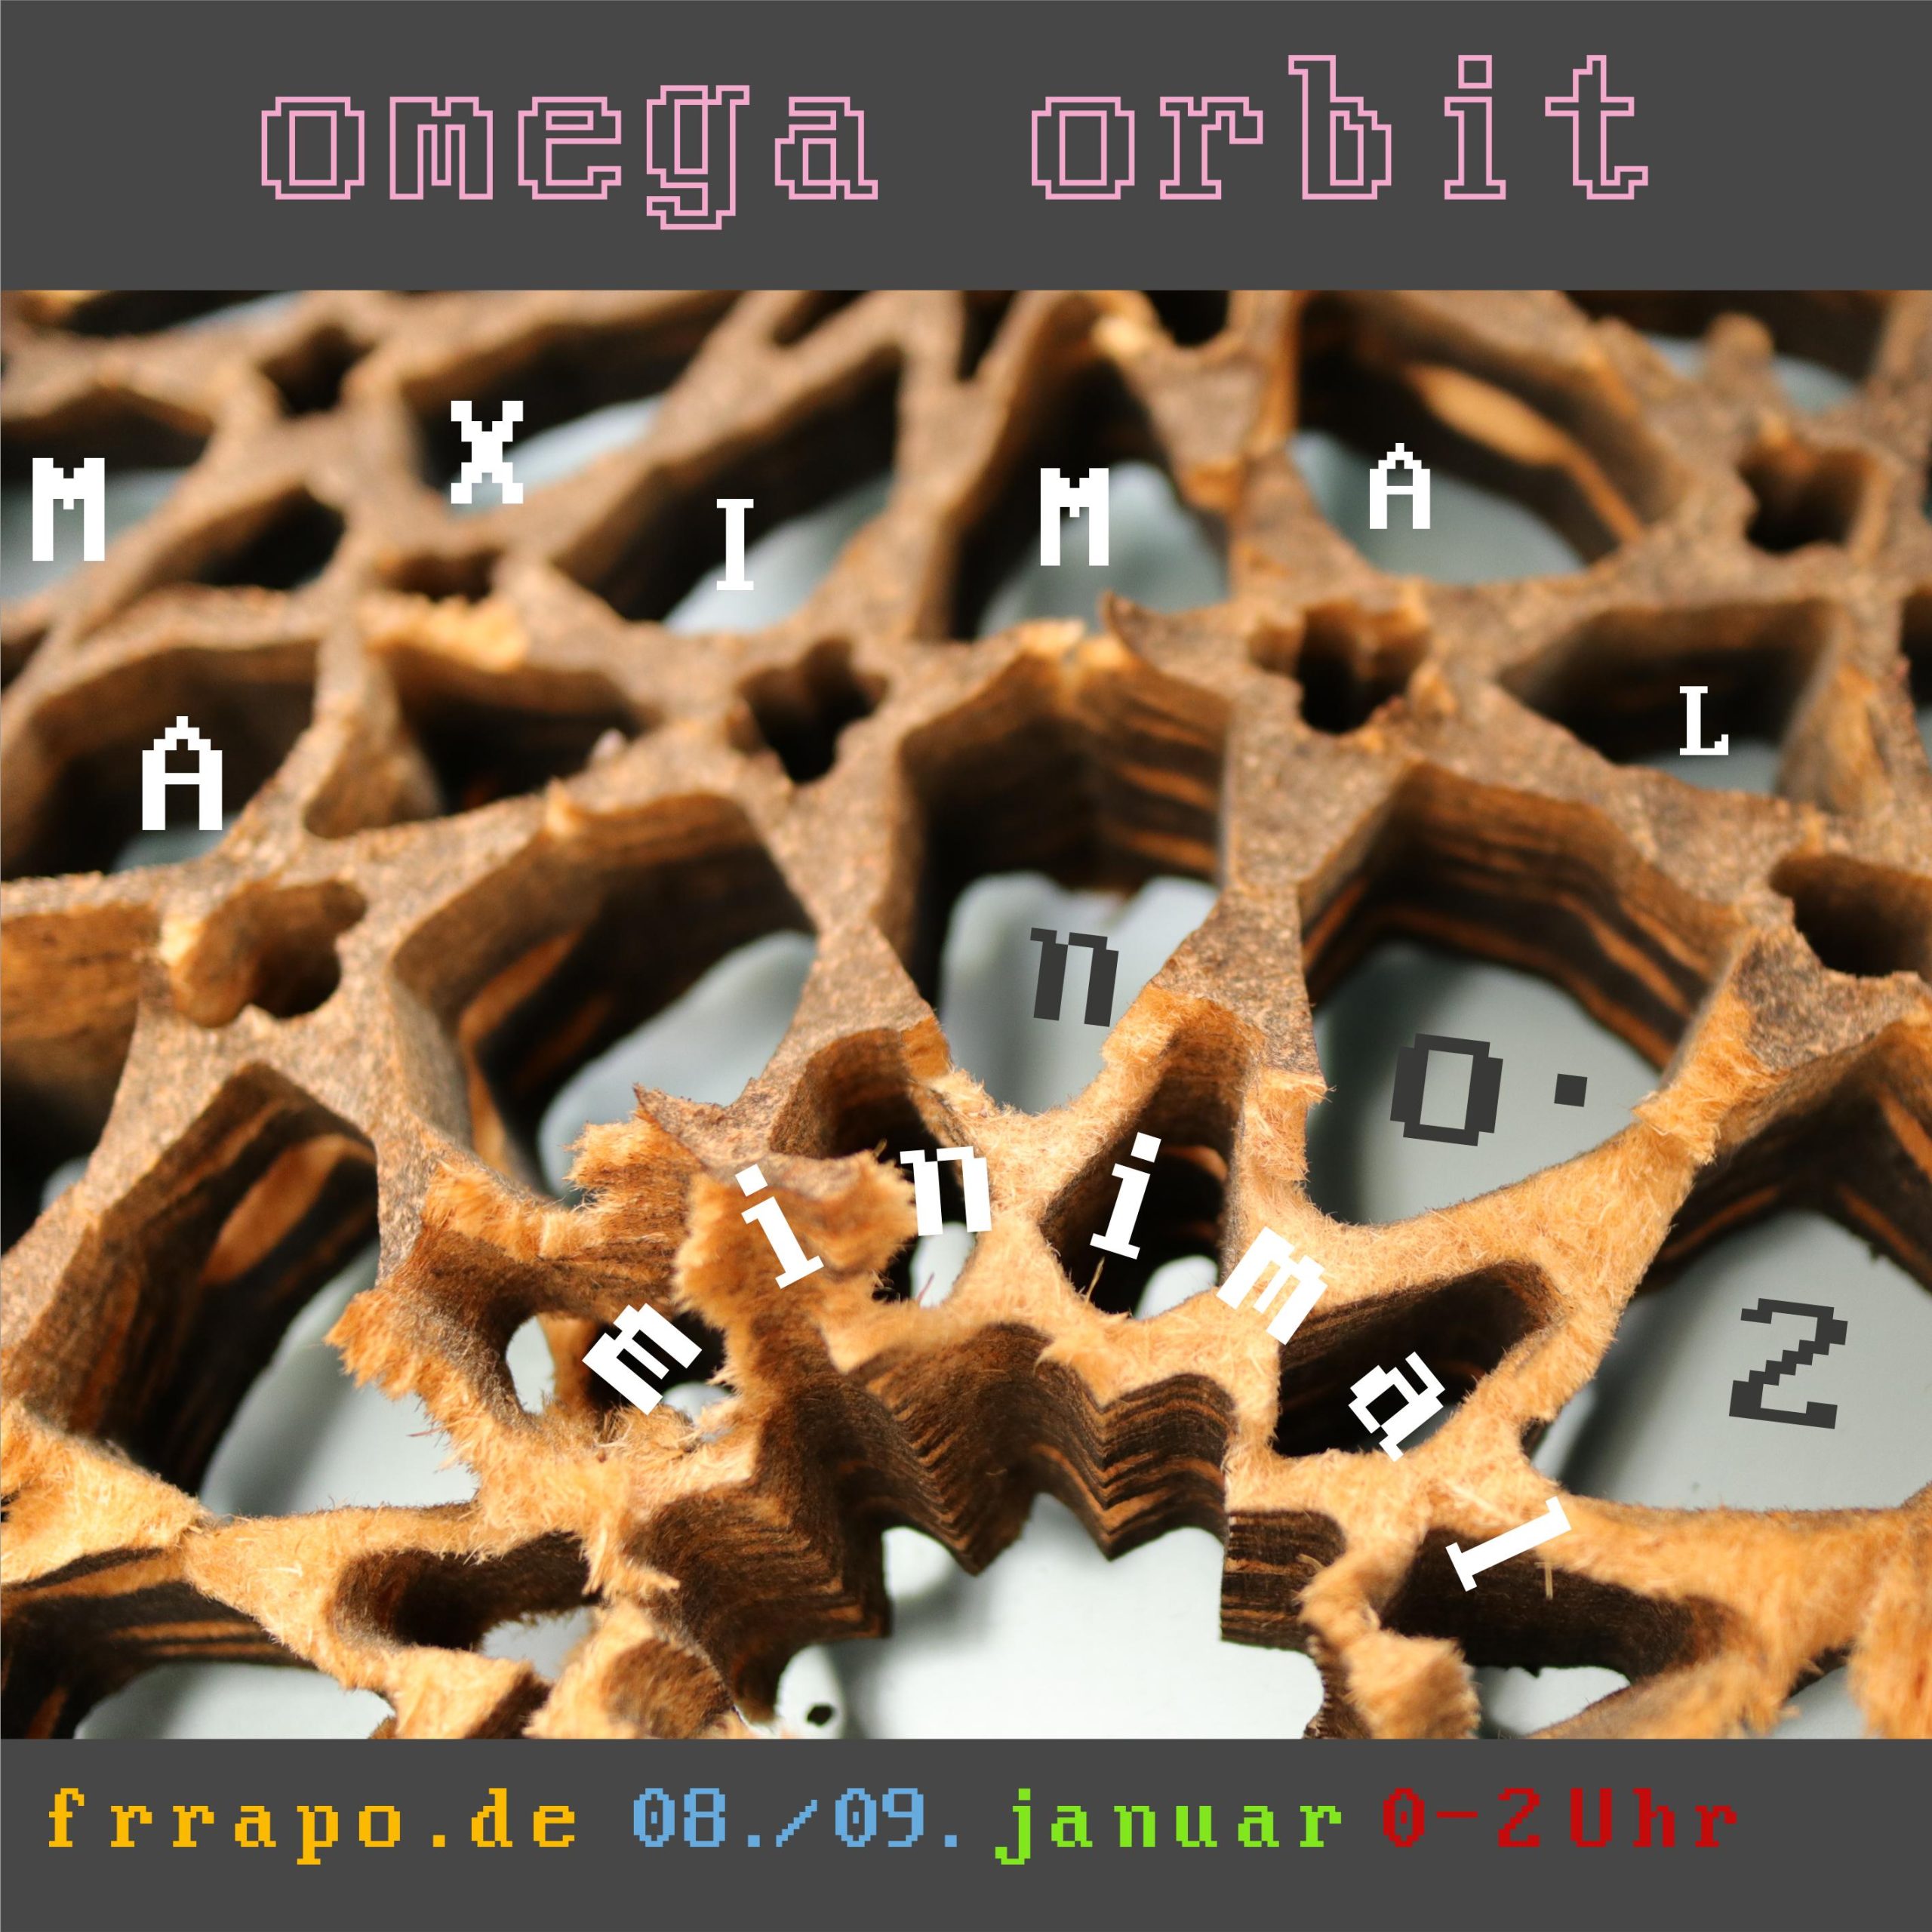 Omega-Orbit: MAXIMAL minimal No 2, am 8./9. Jan. von 0-2 Uhr